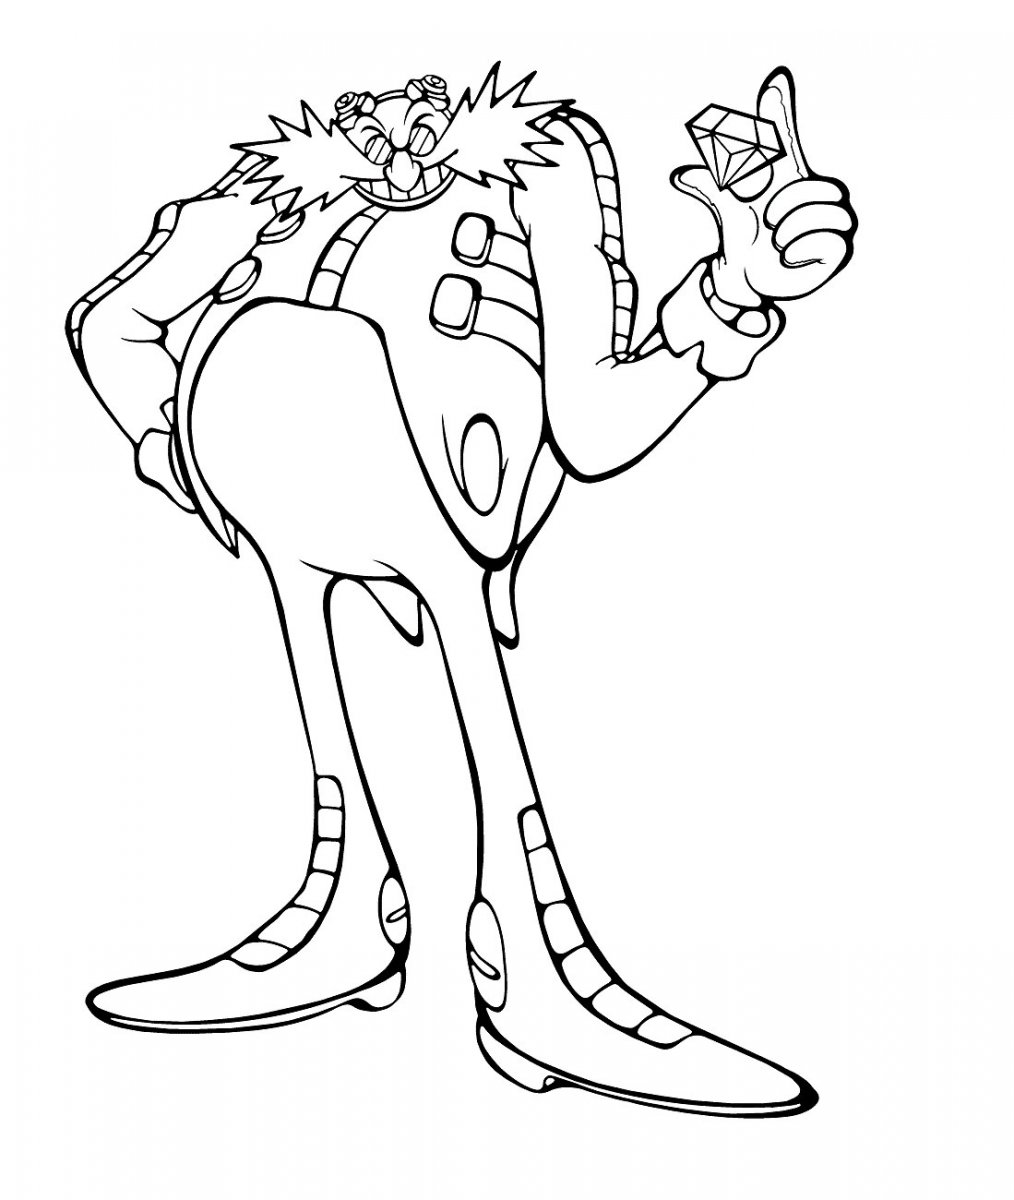 Desenho de Silver Sonic para colorir - Tudodesenhos